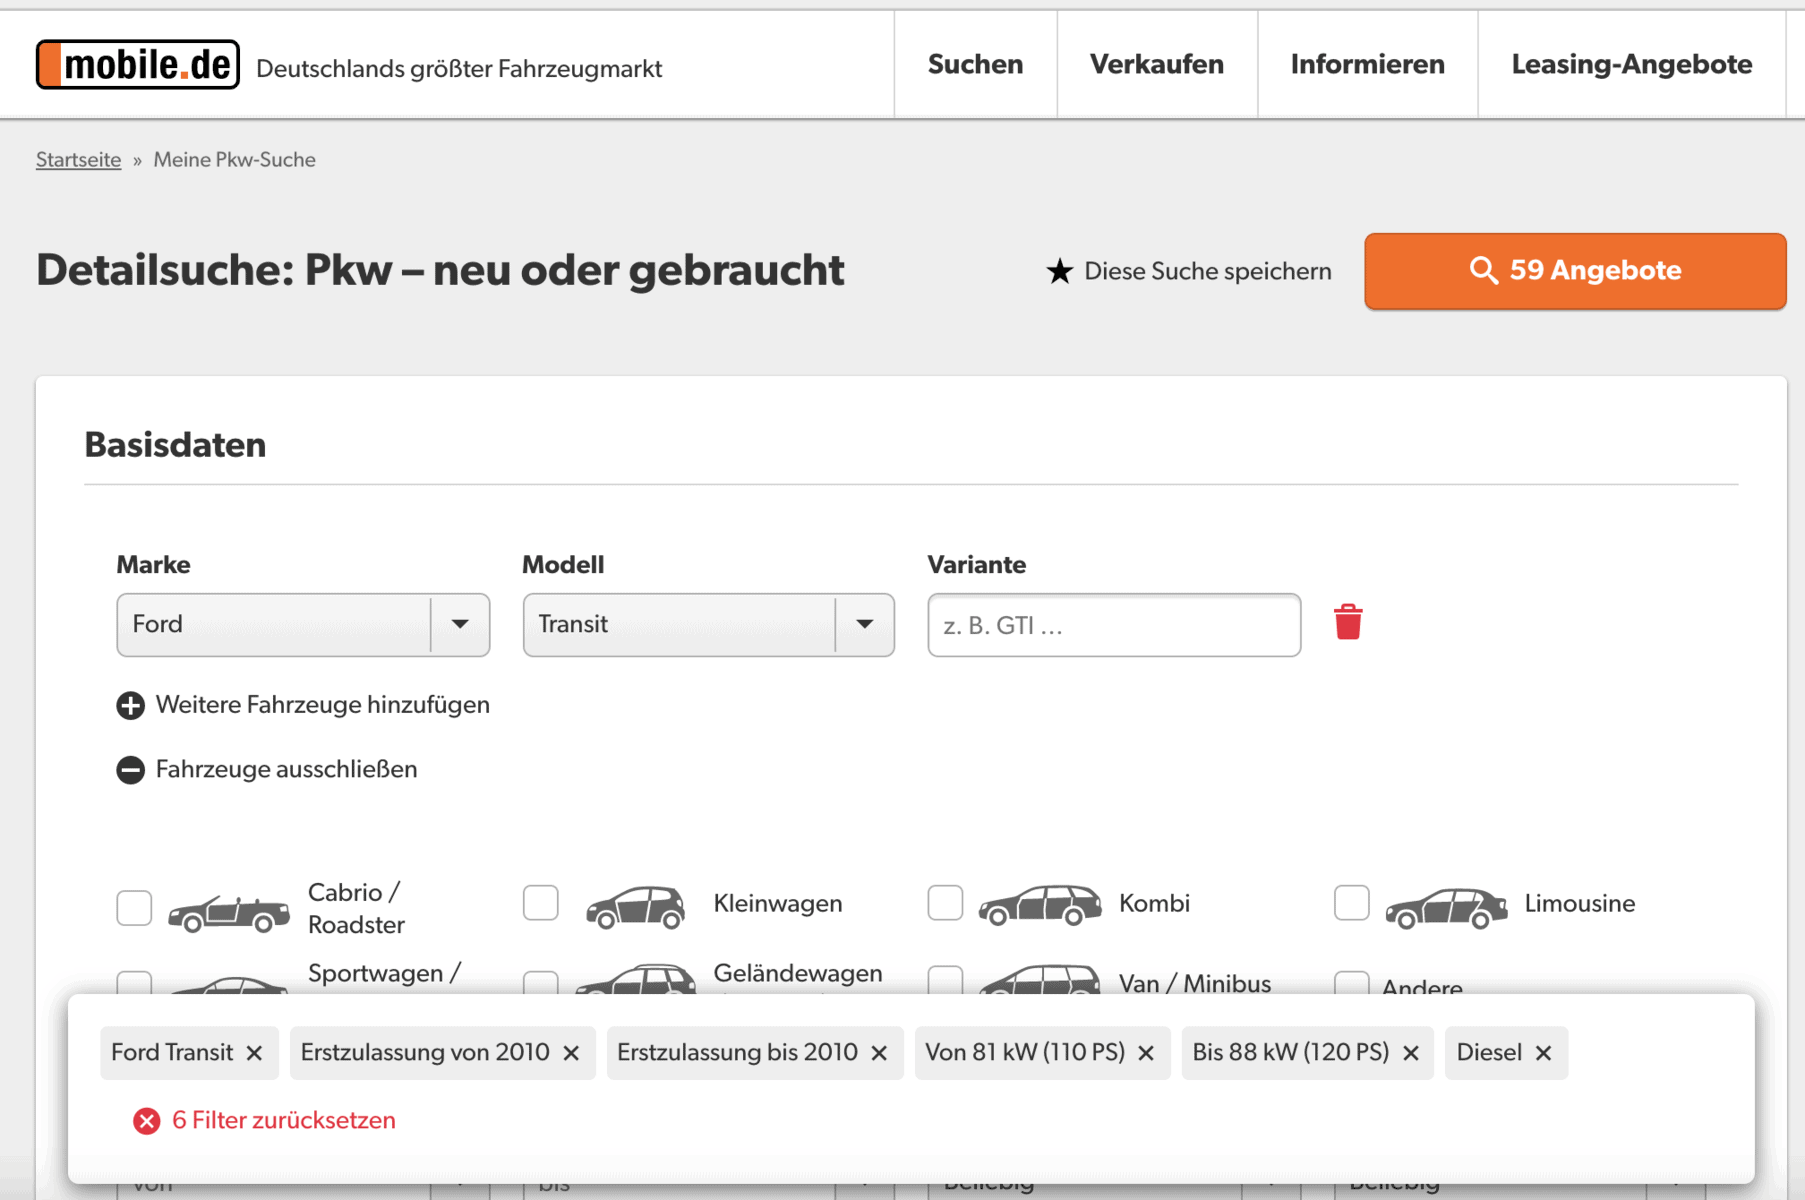 Fahrzeug-Detailsuche auf mobile.de